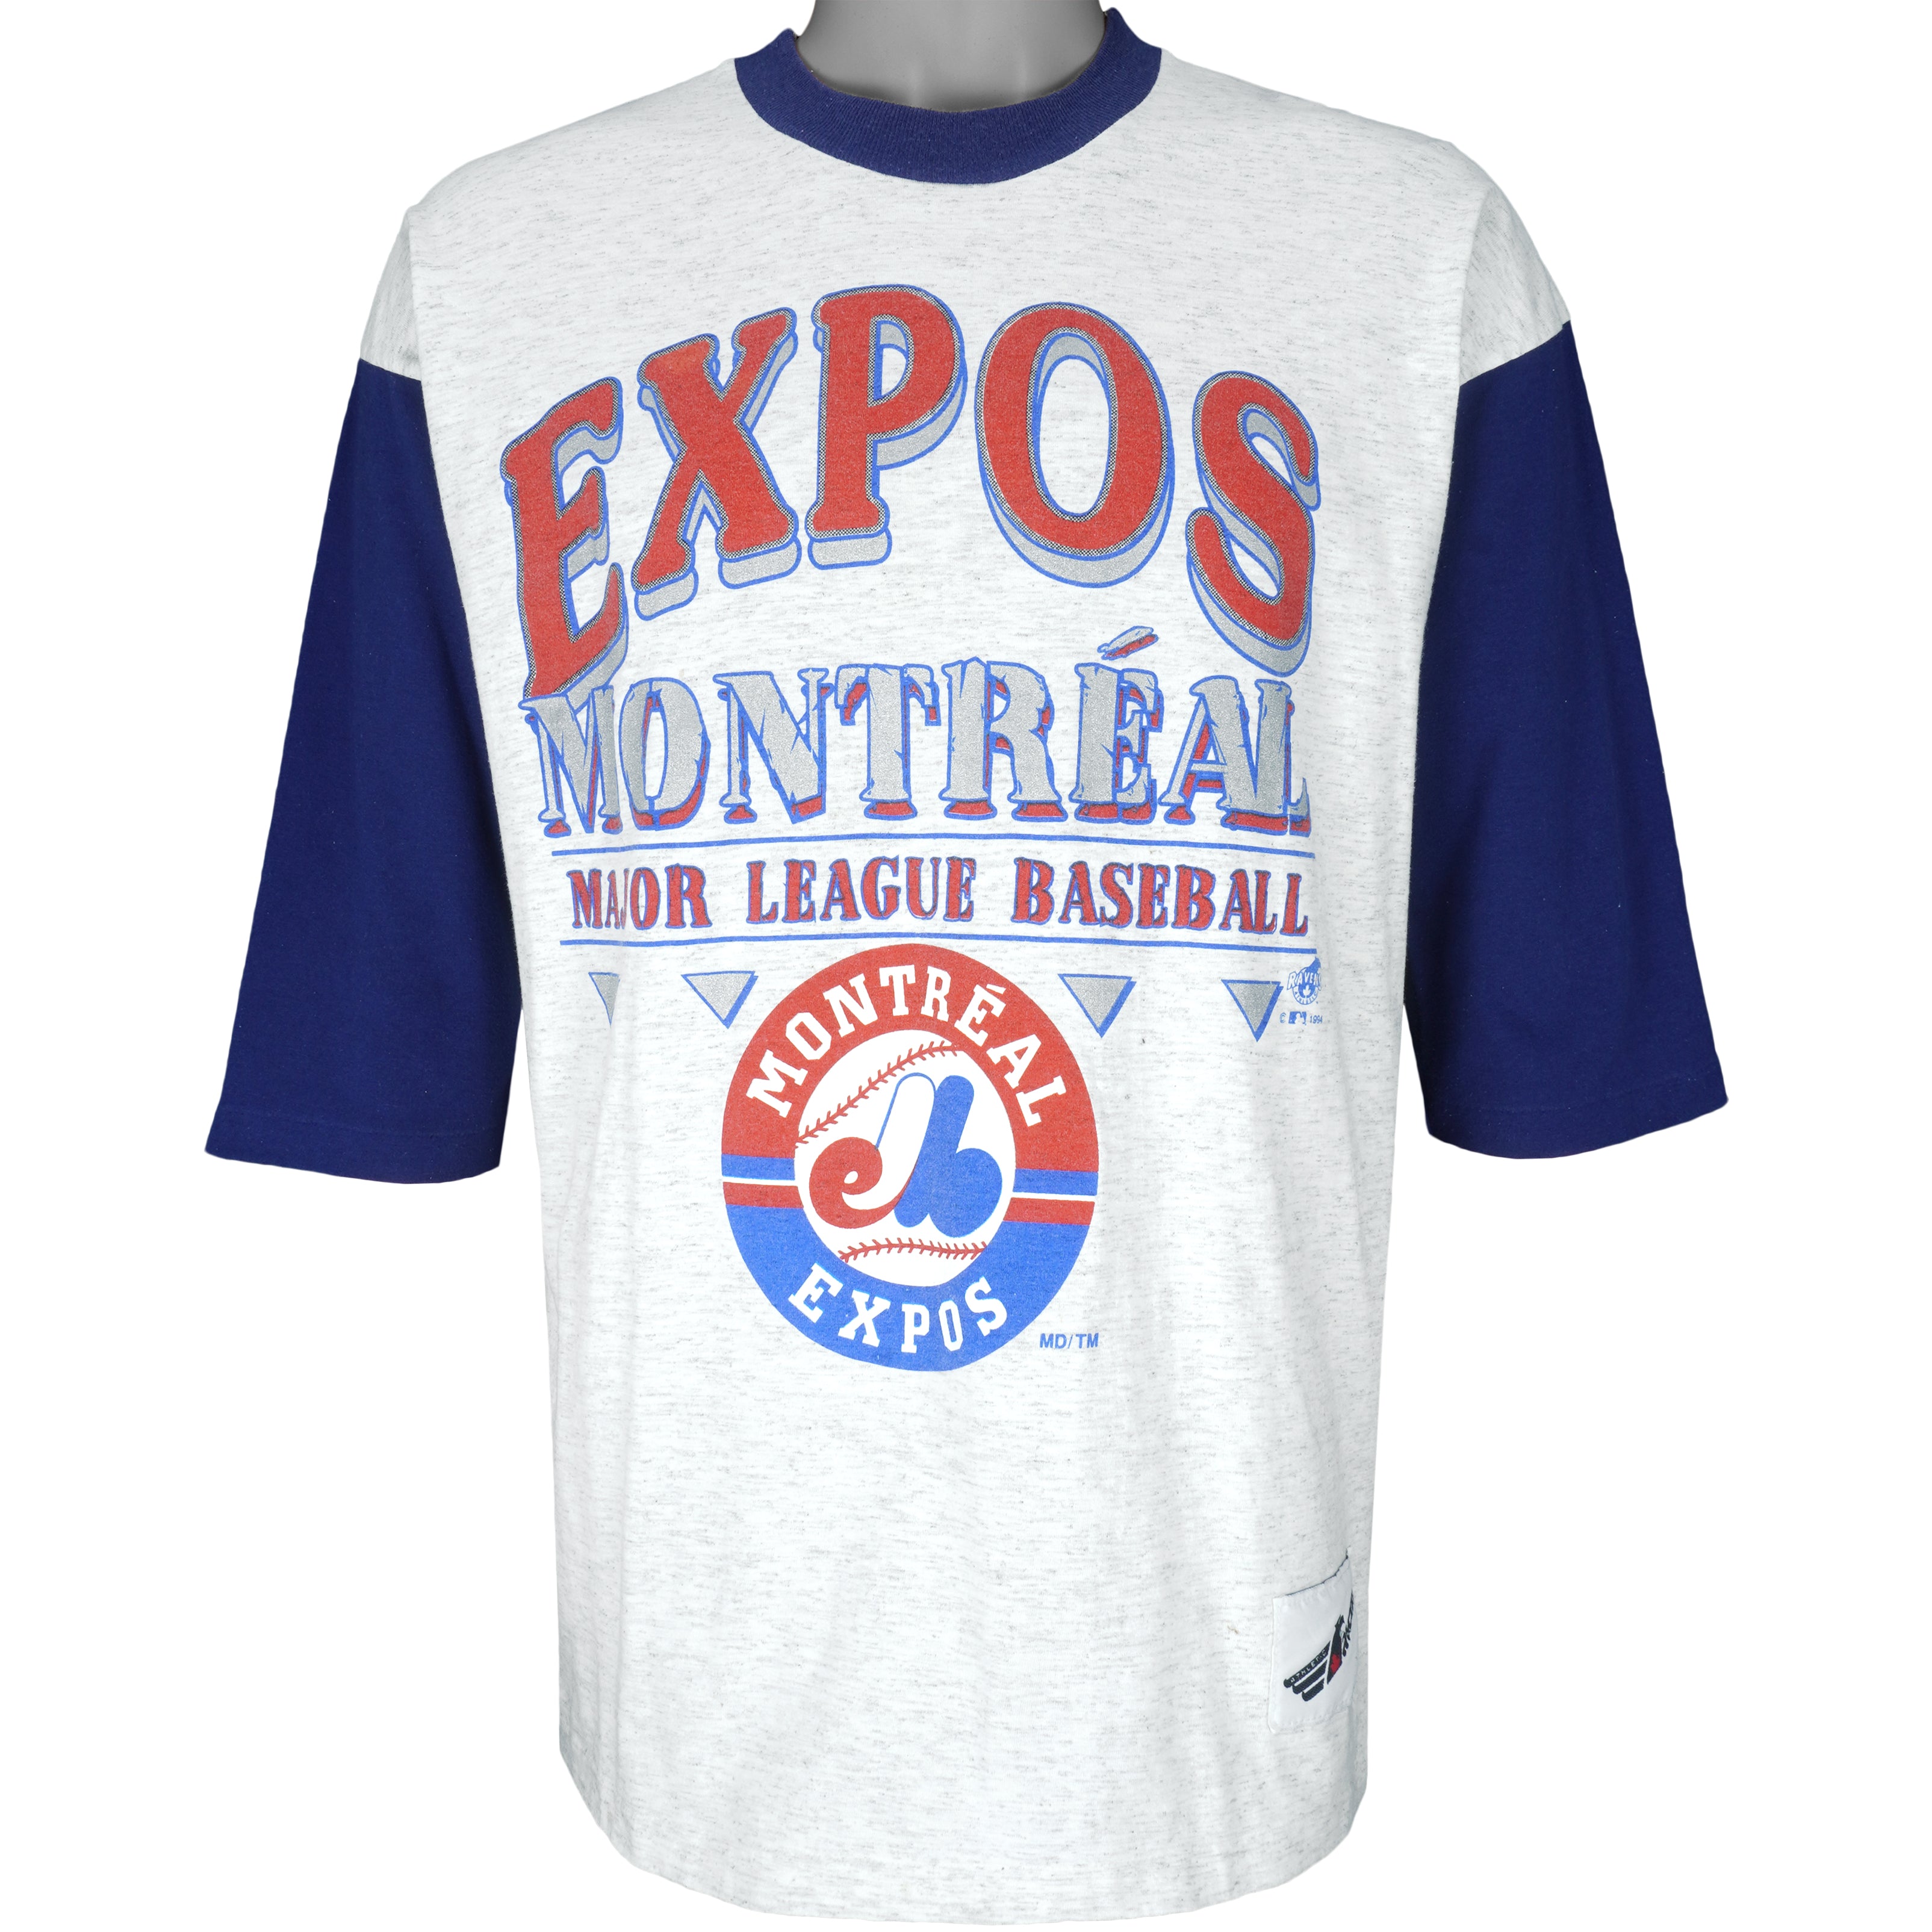 Expos Apparel, Expos Gear, Montreal Expos Merch